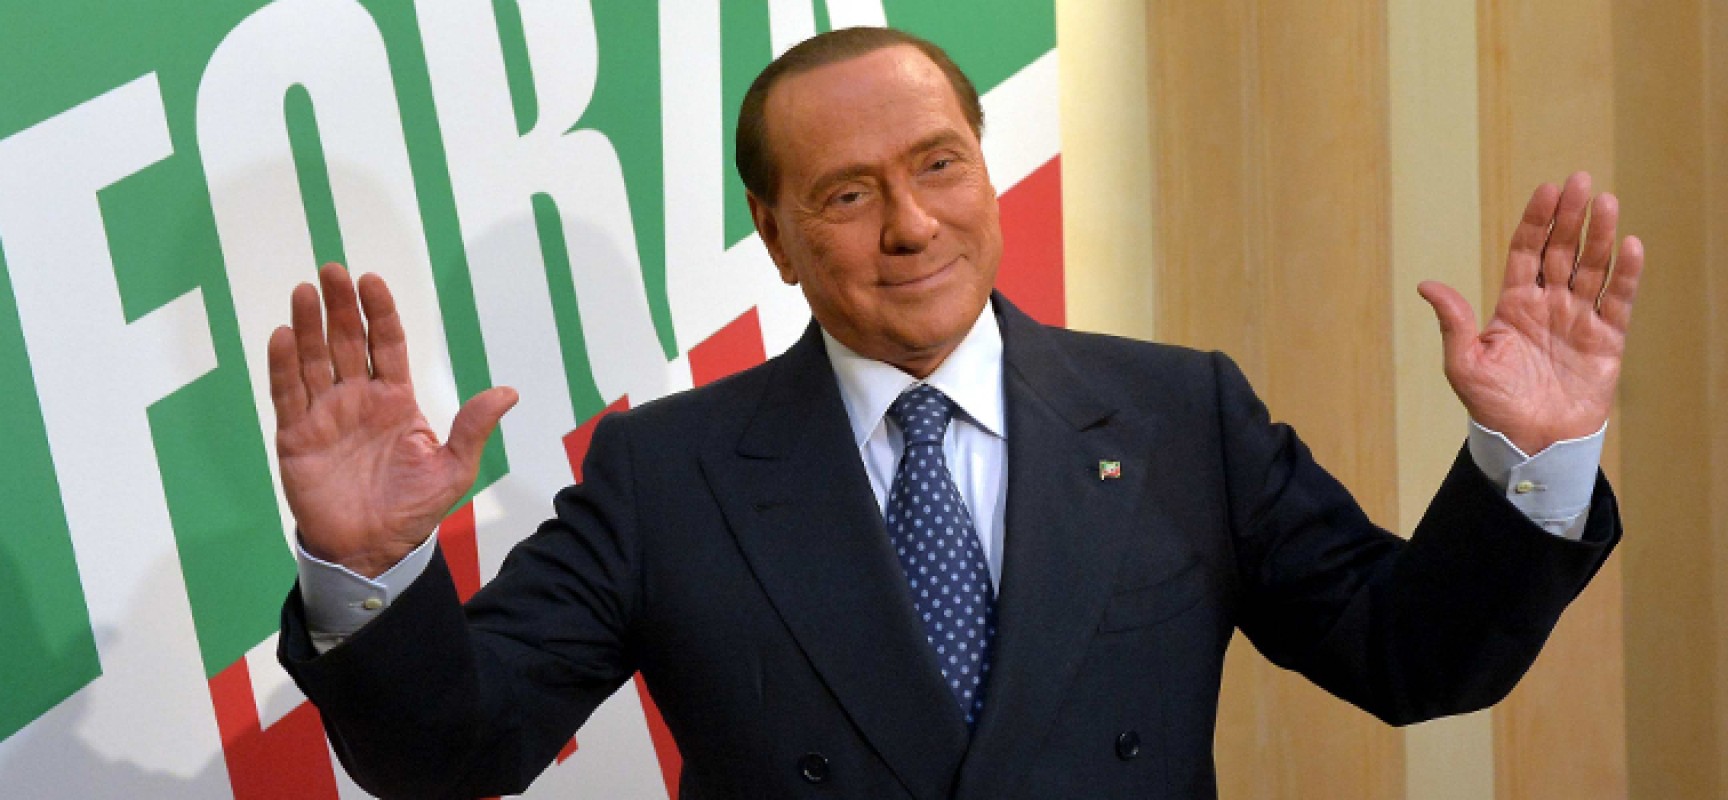 Oggi lutto nazionale per la morte di Silvio Berlusconi: cosa è previsto